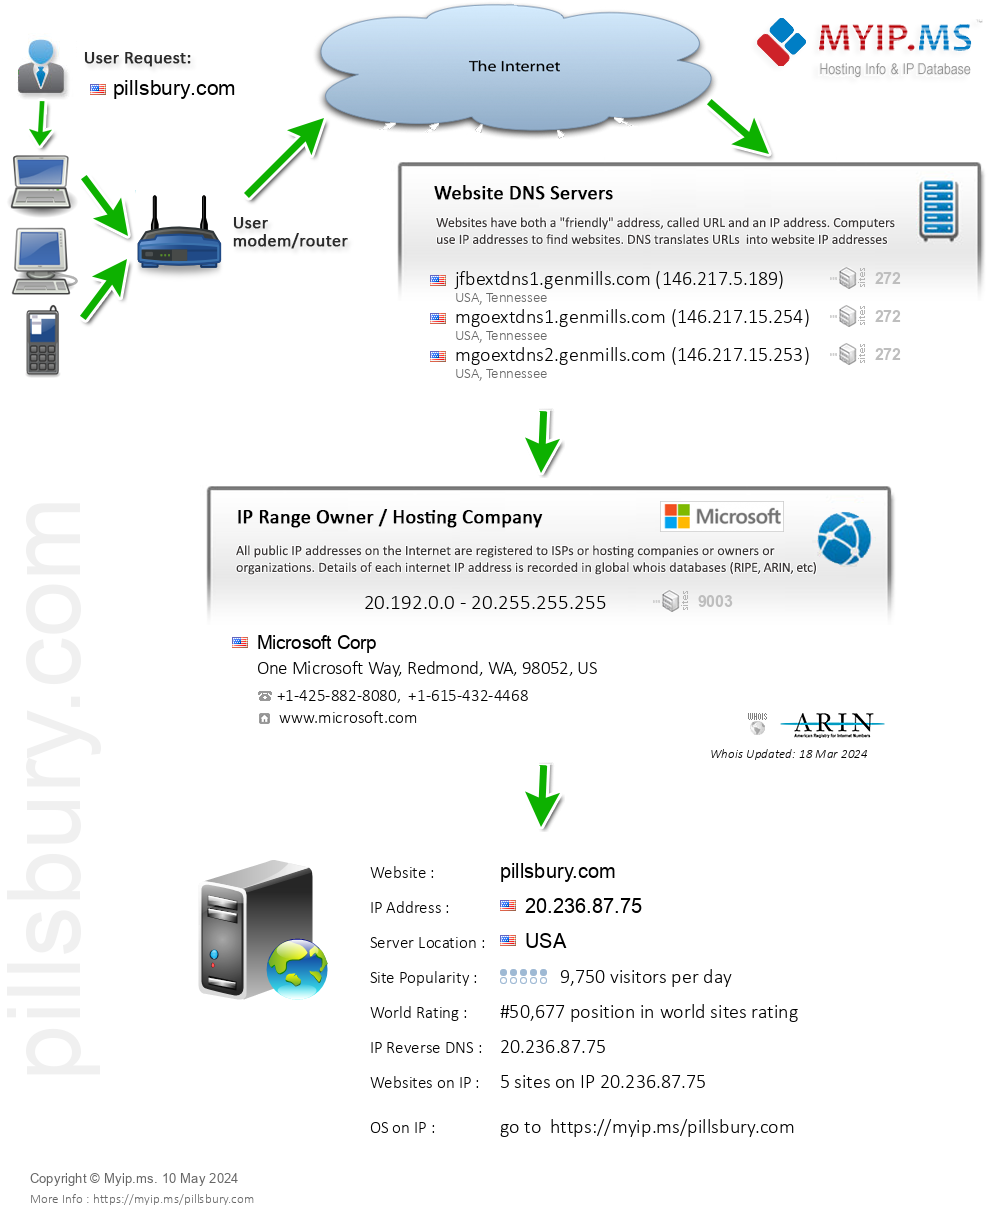 Pillsbury.com - Website Hosting Visual IP Diagram